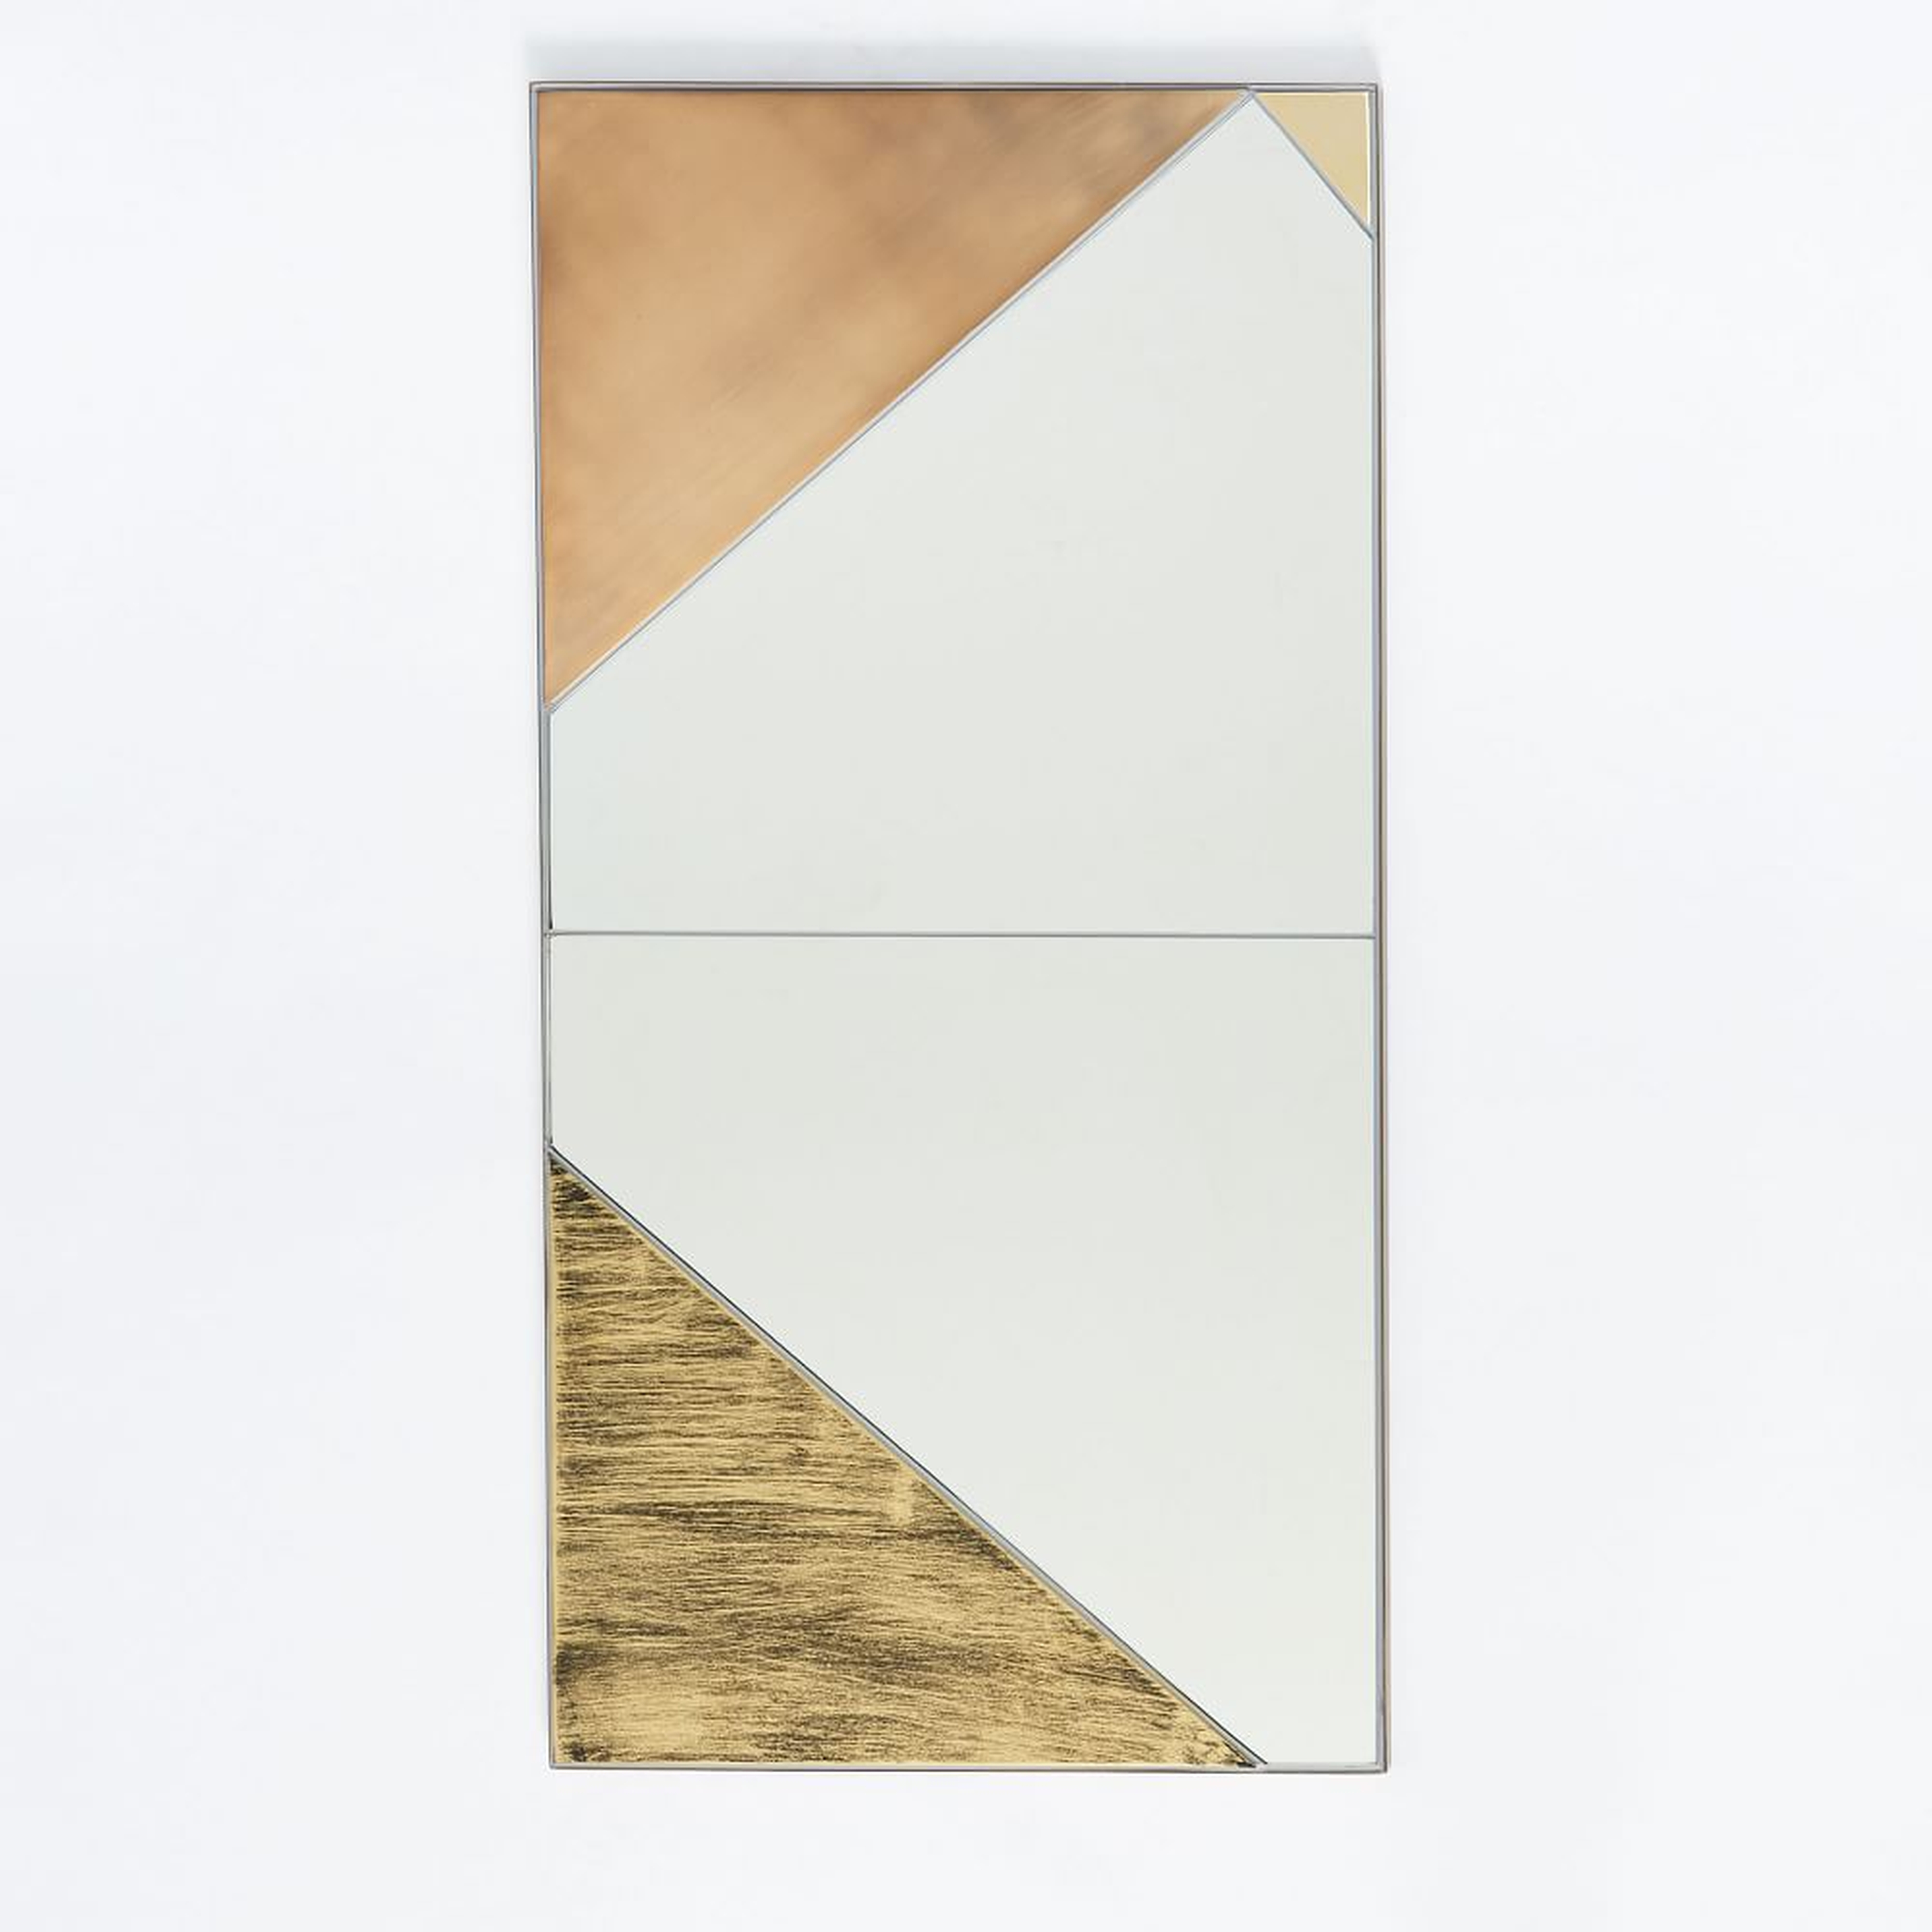 Roar + Rabbit Infinity Mirror, Panel I, 18"Wx36"H - West Elm